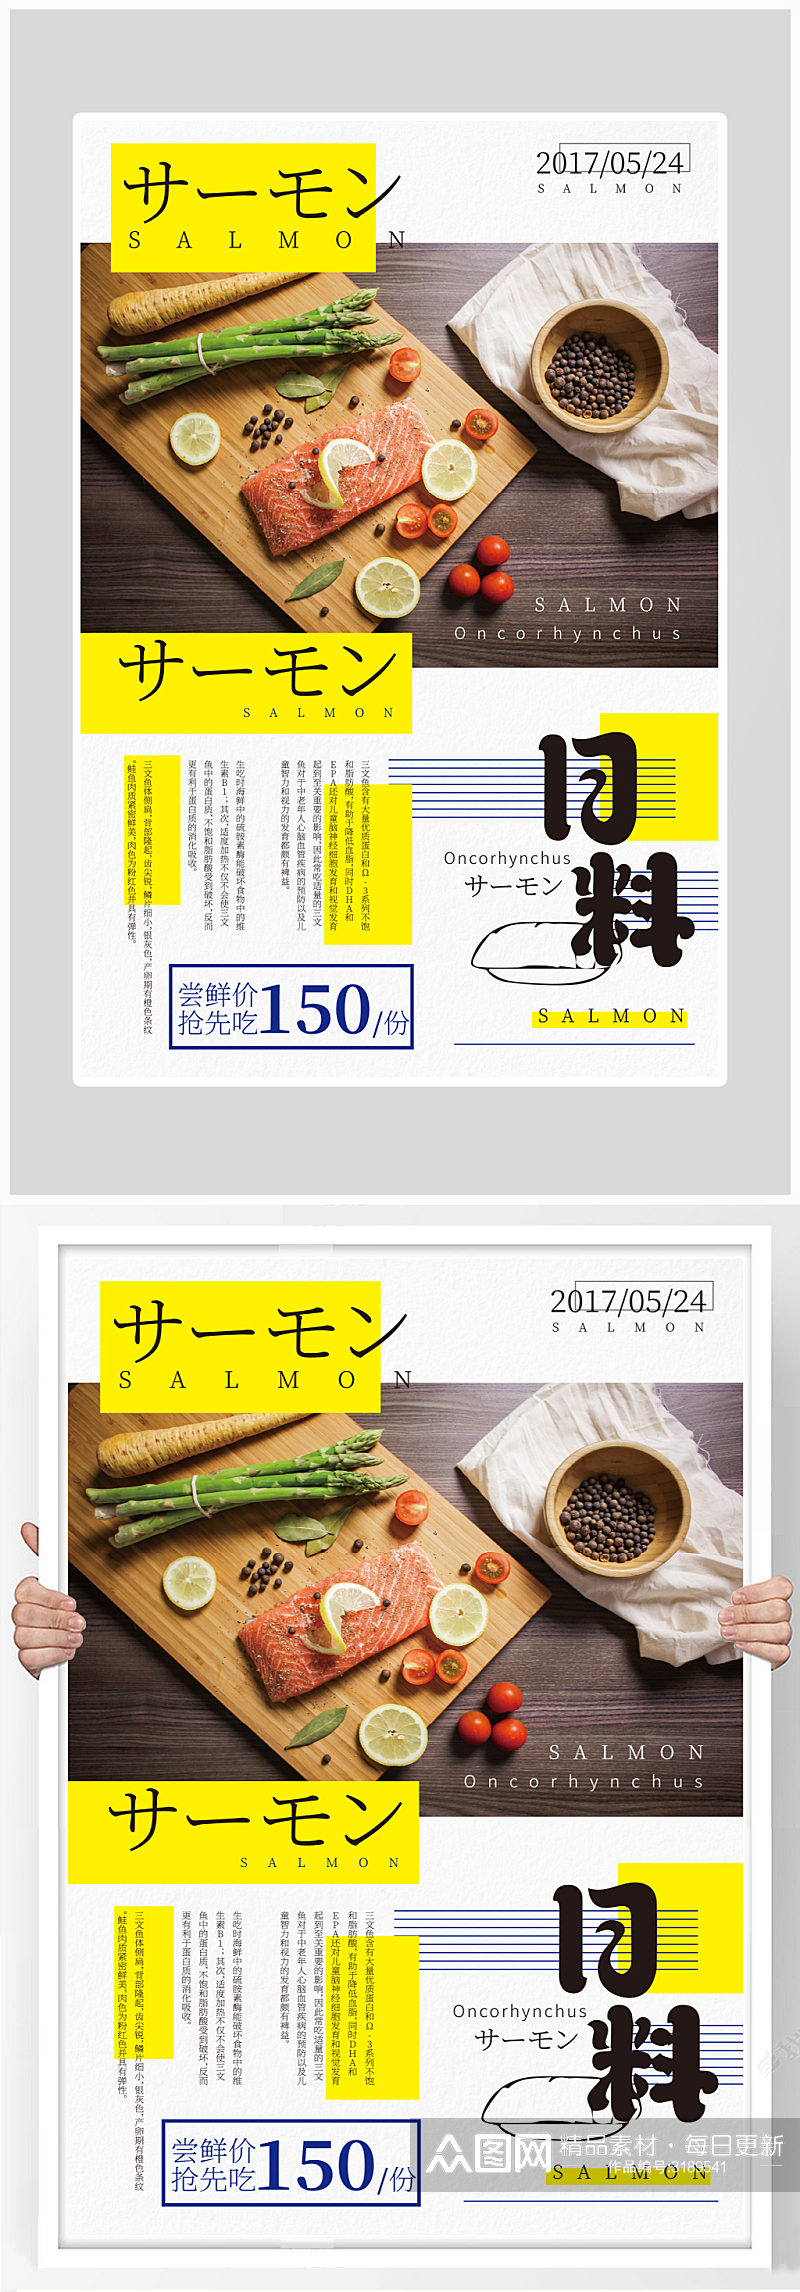 创意日式料理美食海报设计素材